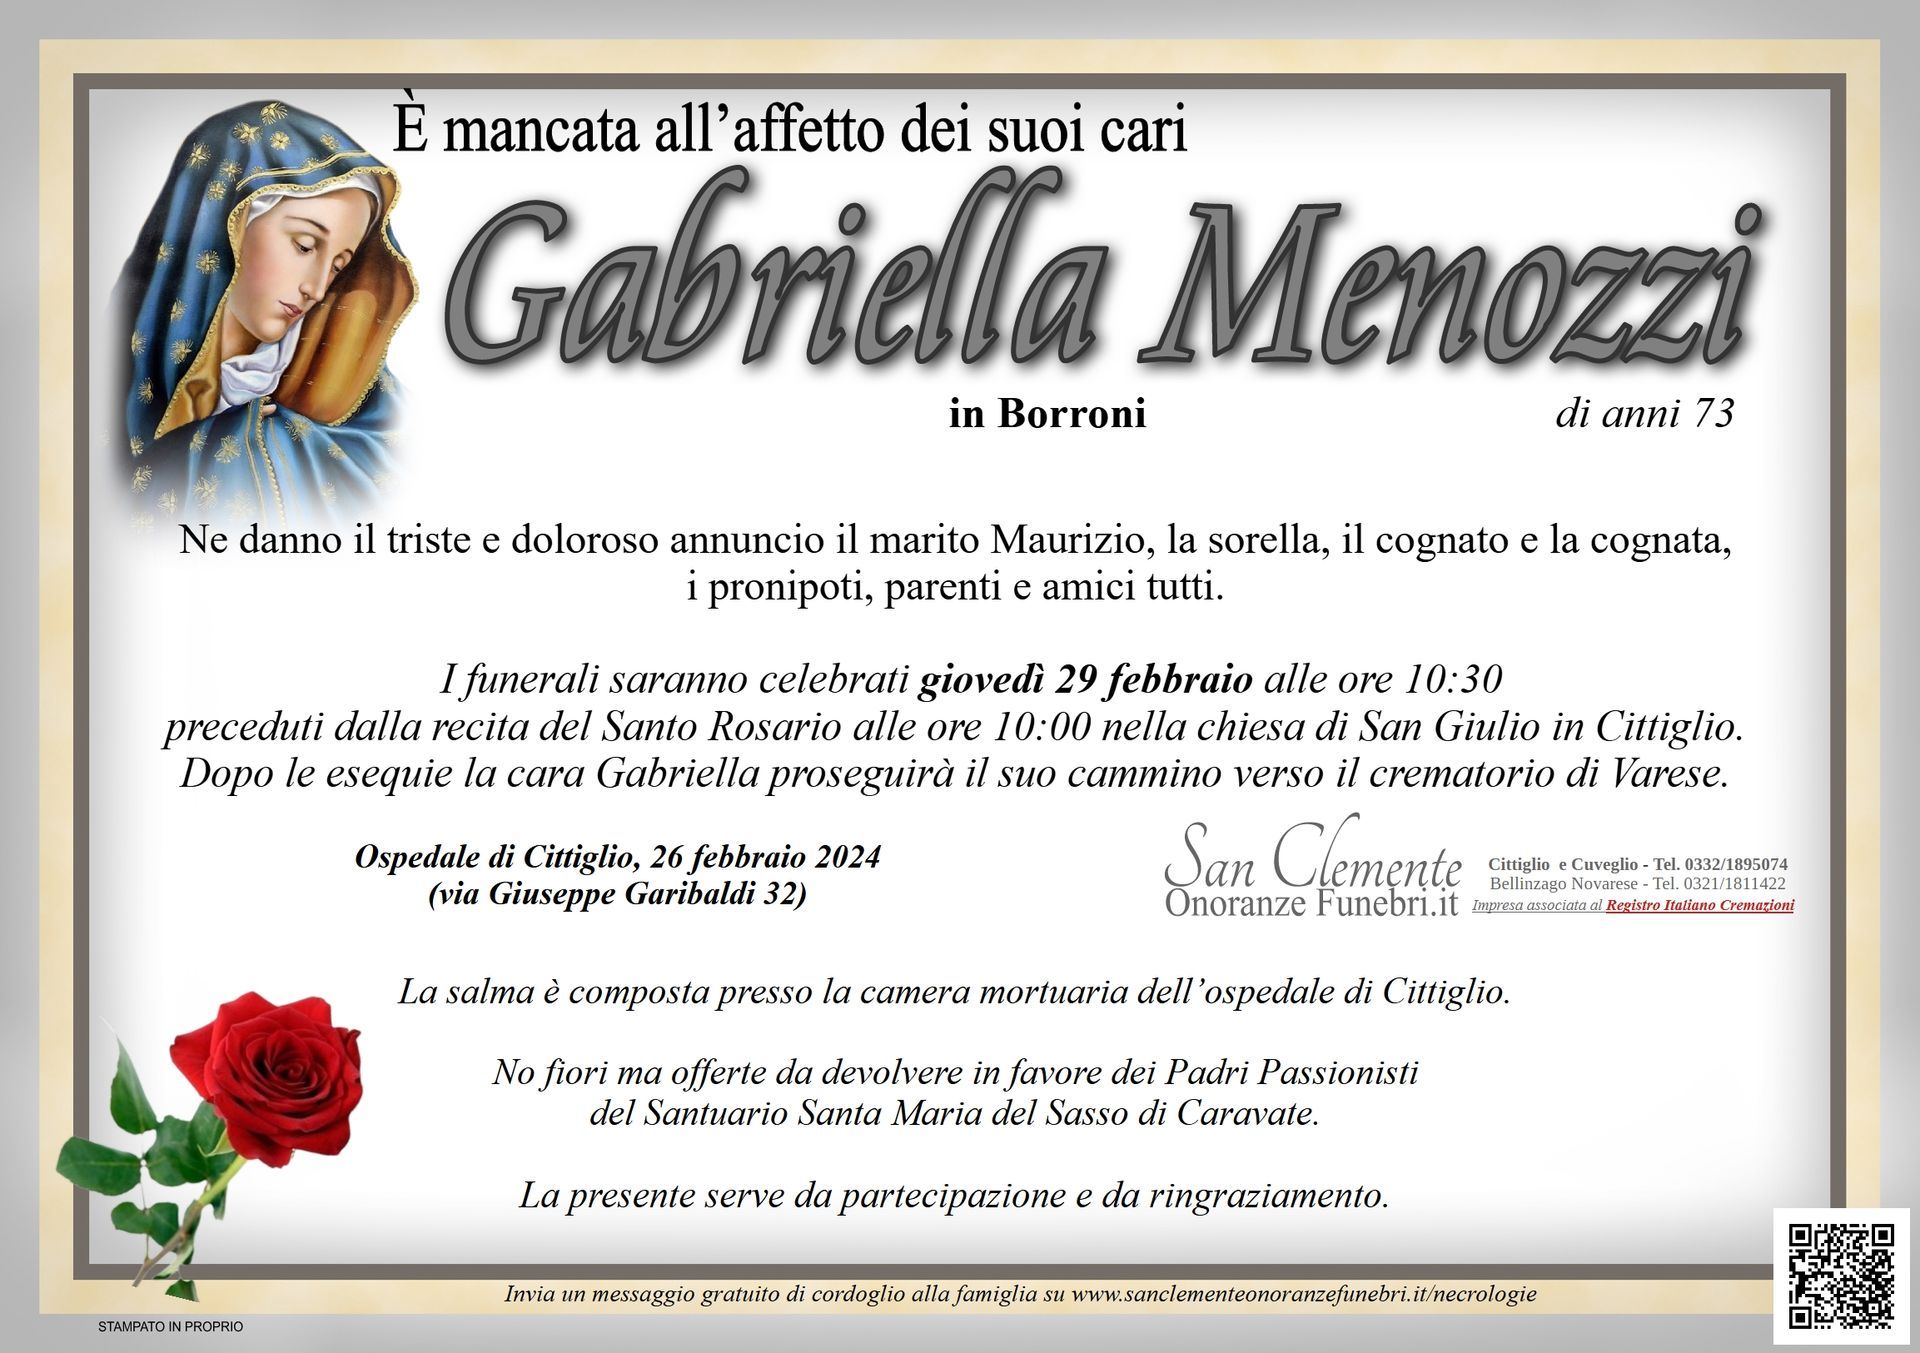 Necrologio Gabriella Menozzi in Borroni